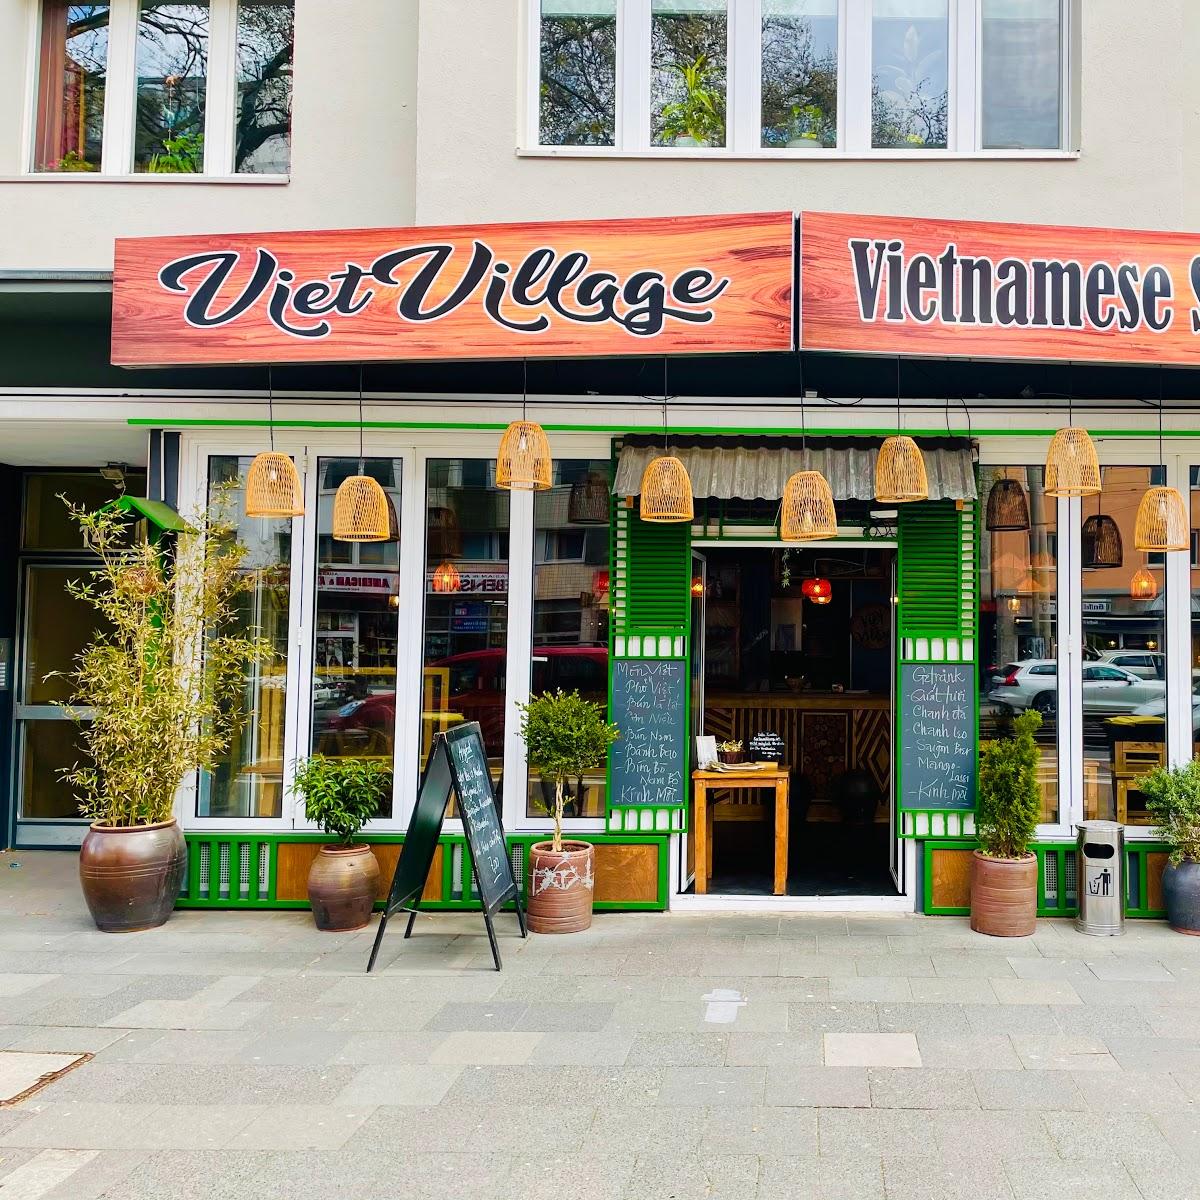 Restaurant "Viet Village" in Köln